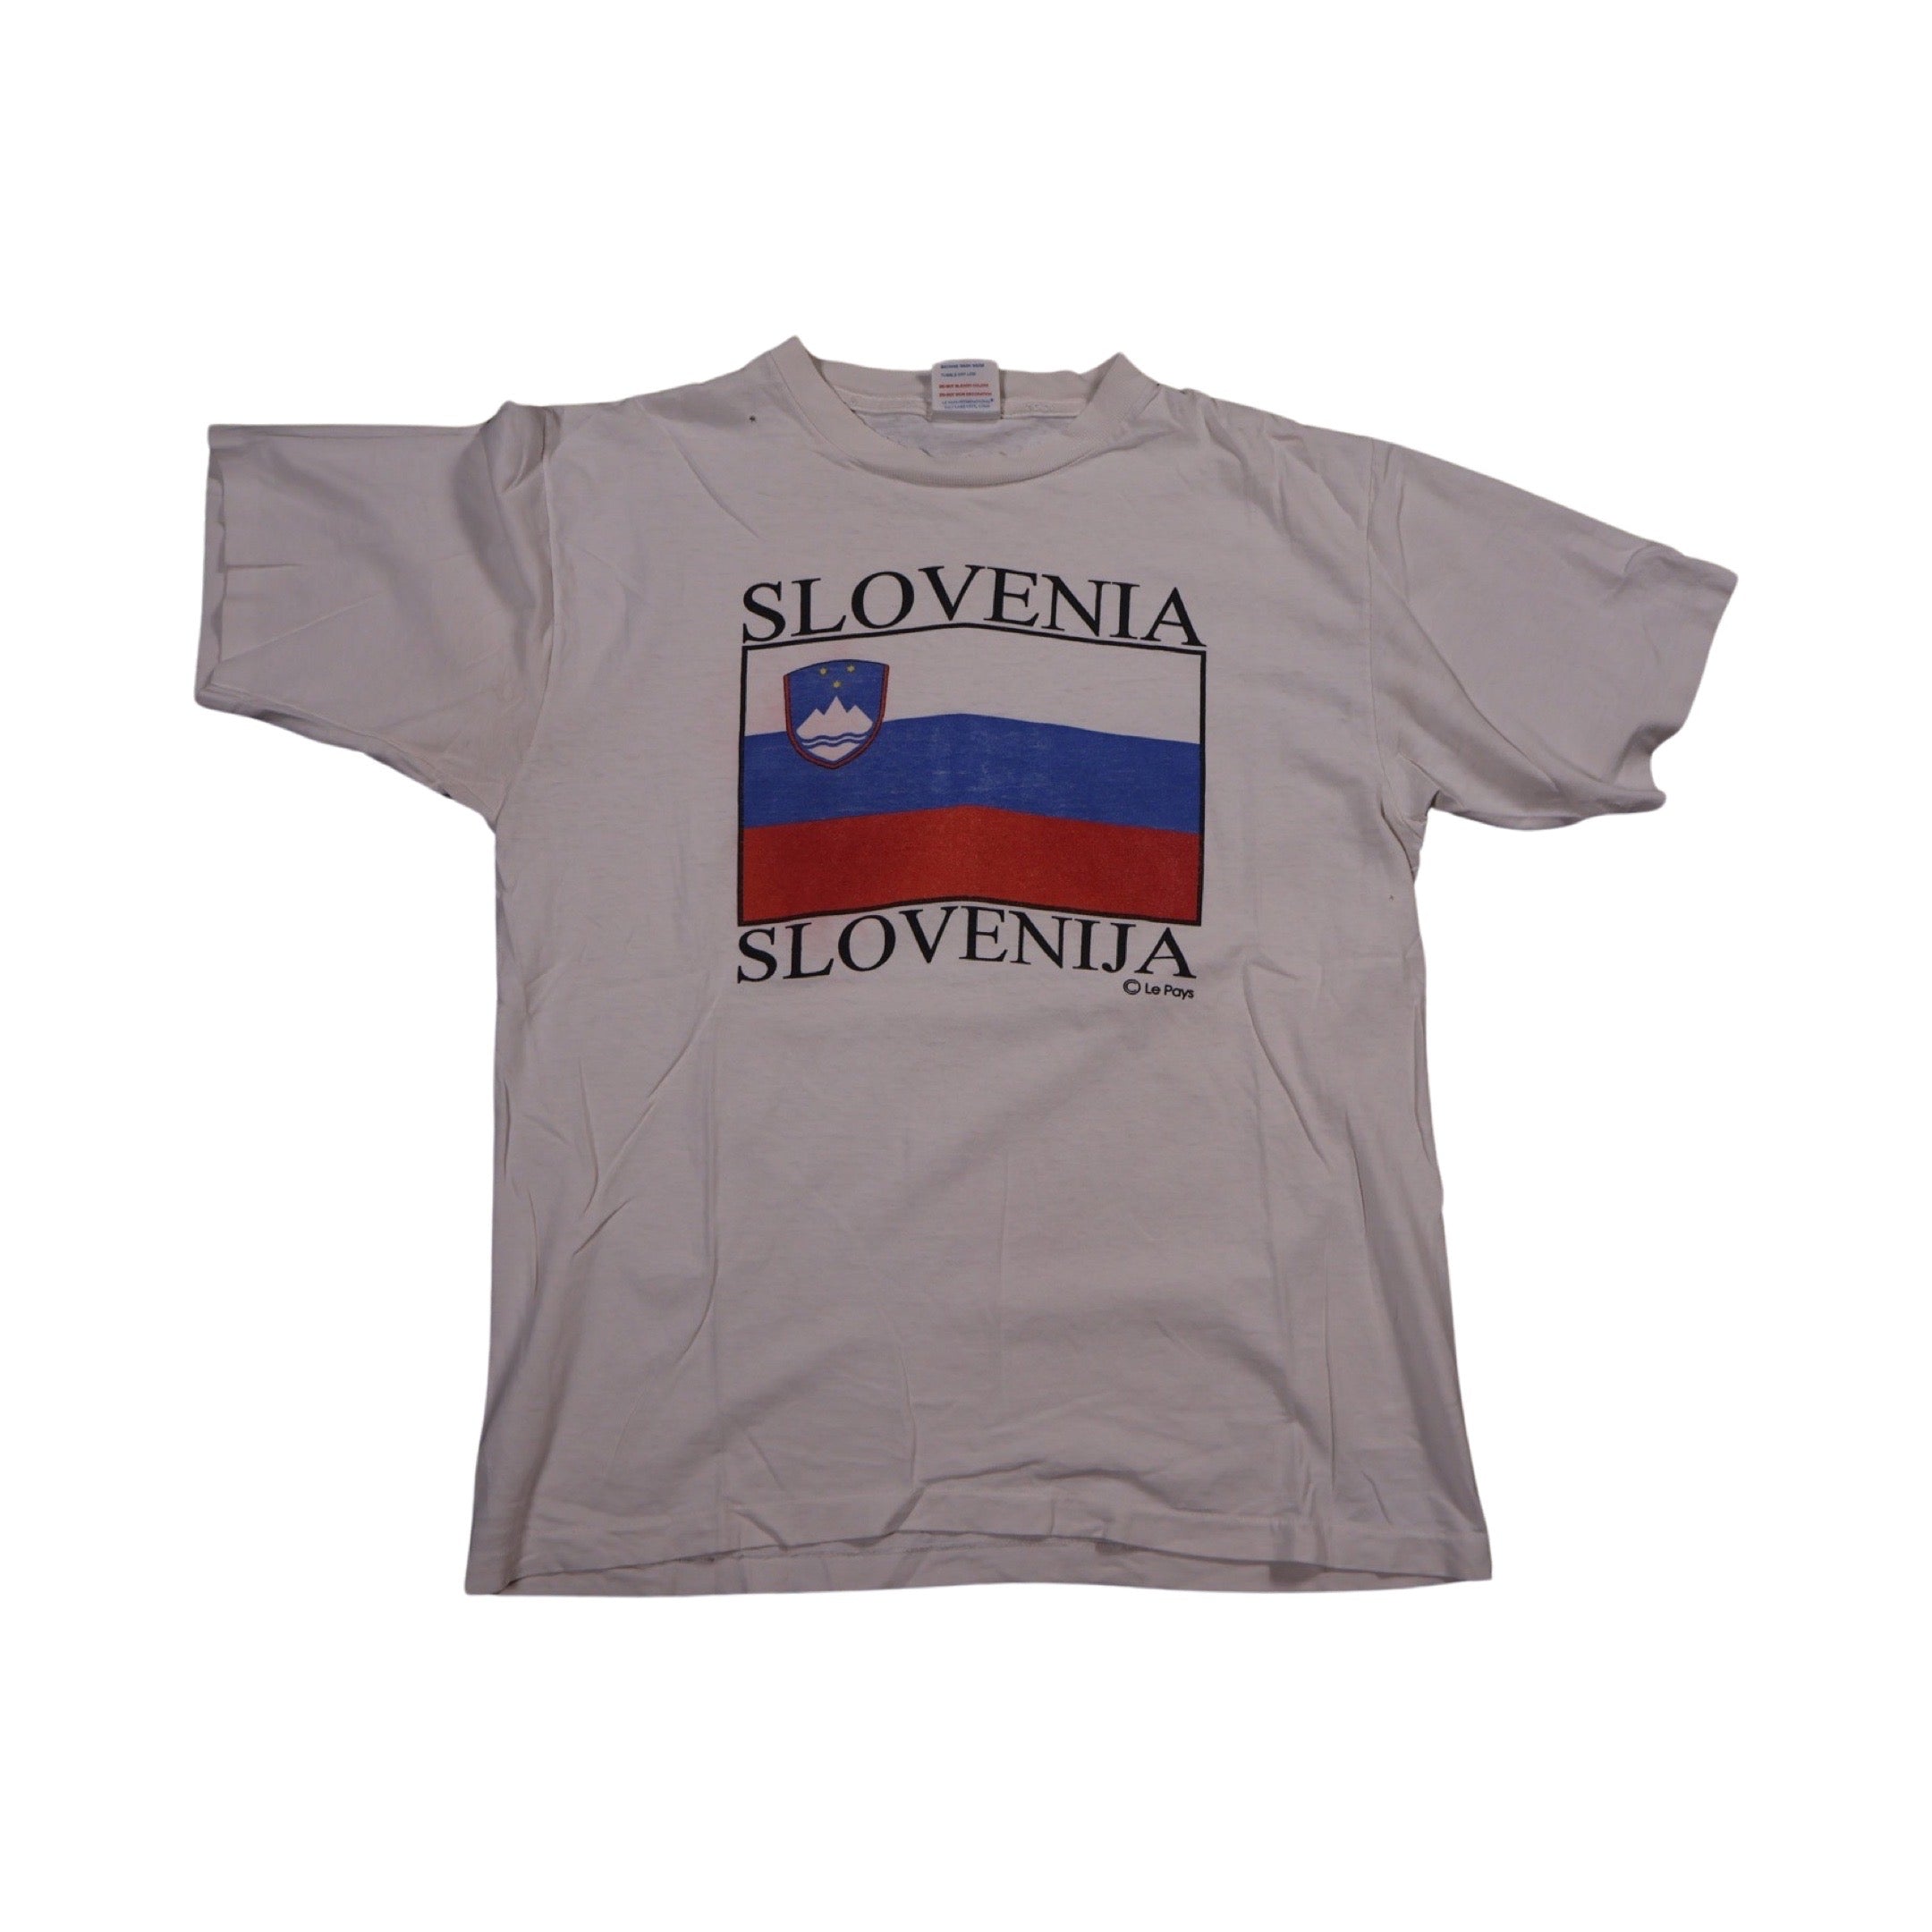 Slovenia 90s T-Shirt (Large)